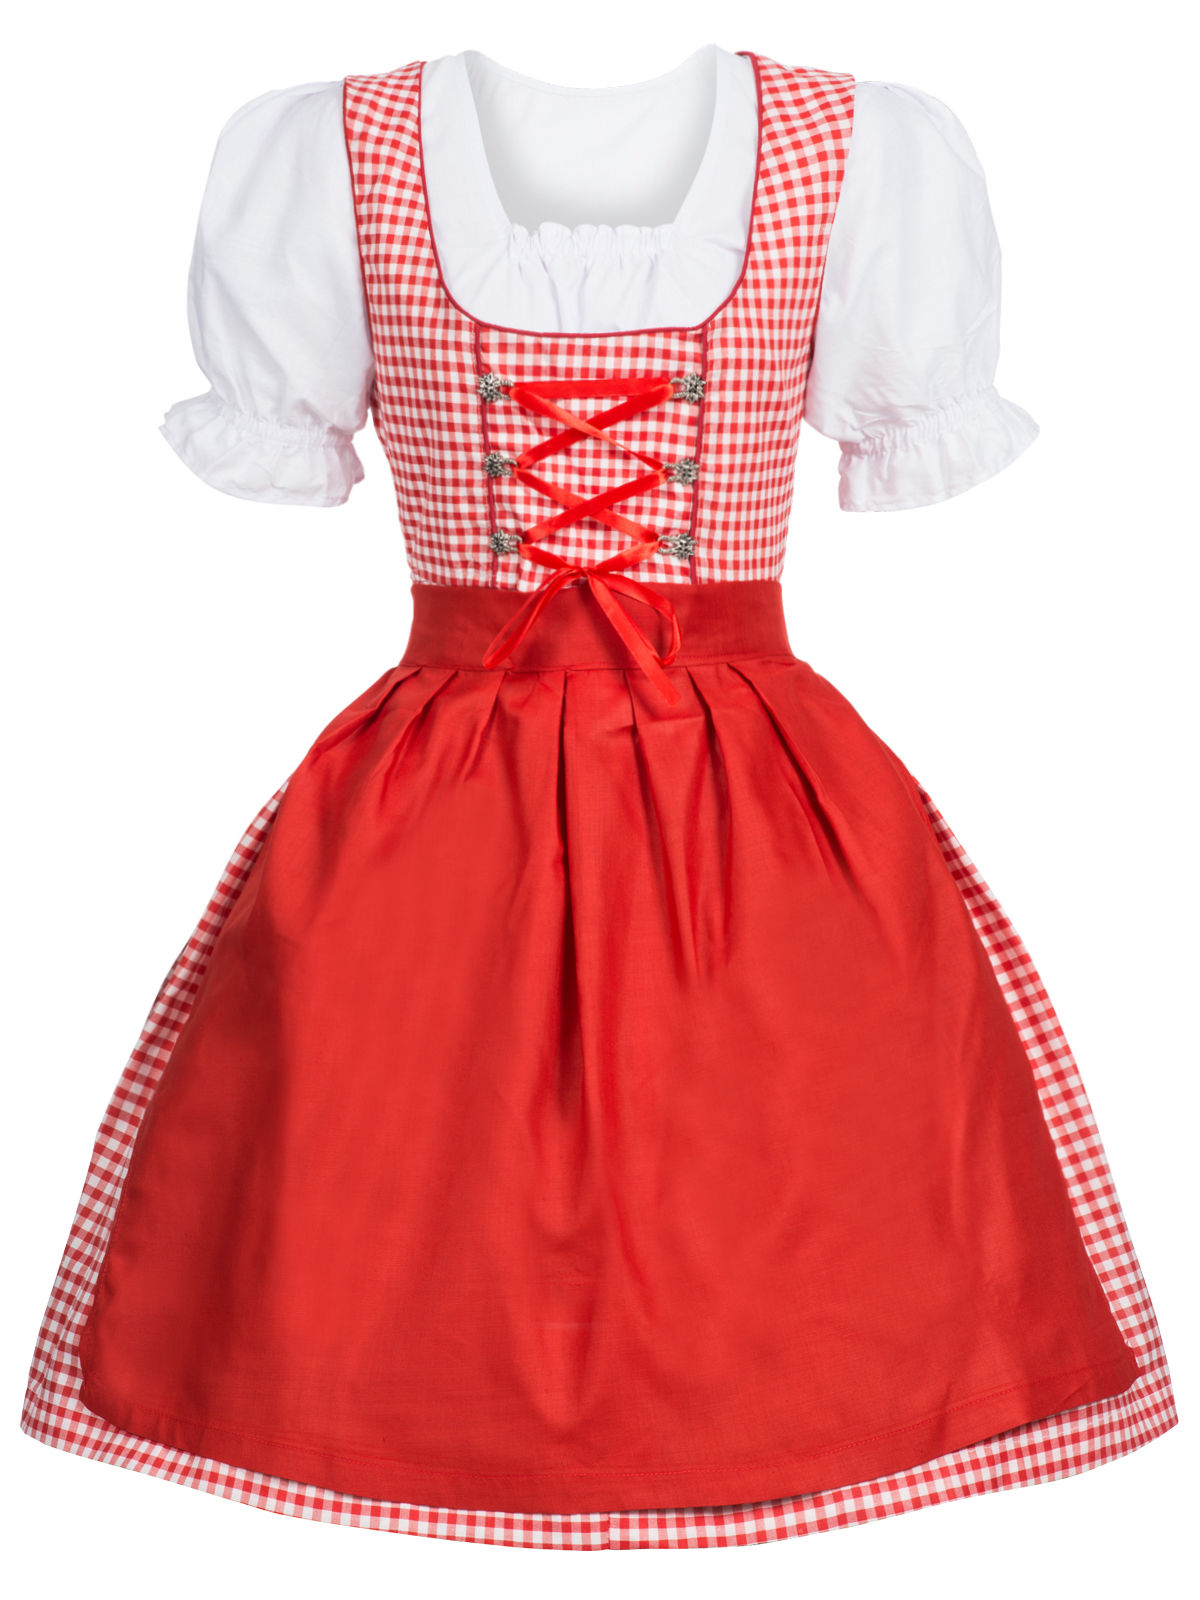 F1789  3 Pcs Dirndl Serving Wench Bavarian Beer Girl Oktoberfest Adult Costume